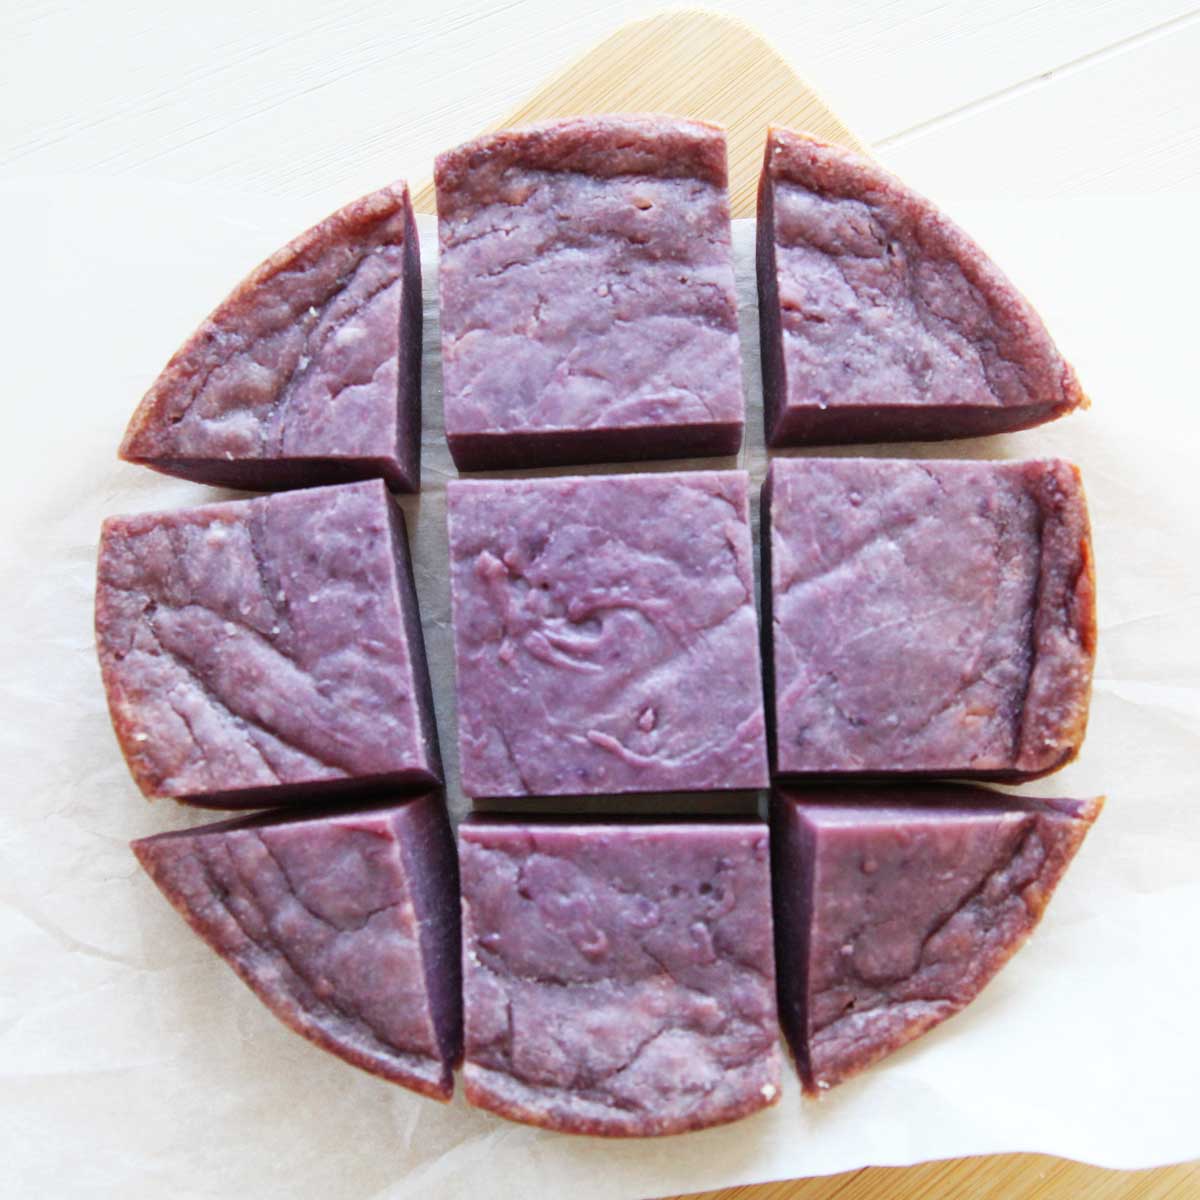 Deliciously Purple Ube Mochi Cake (Baked Nian Gao) - Ube Mochi Cake